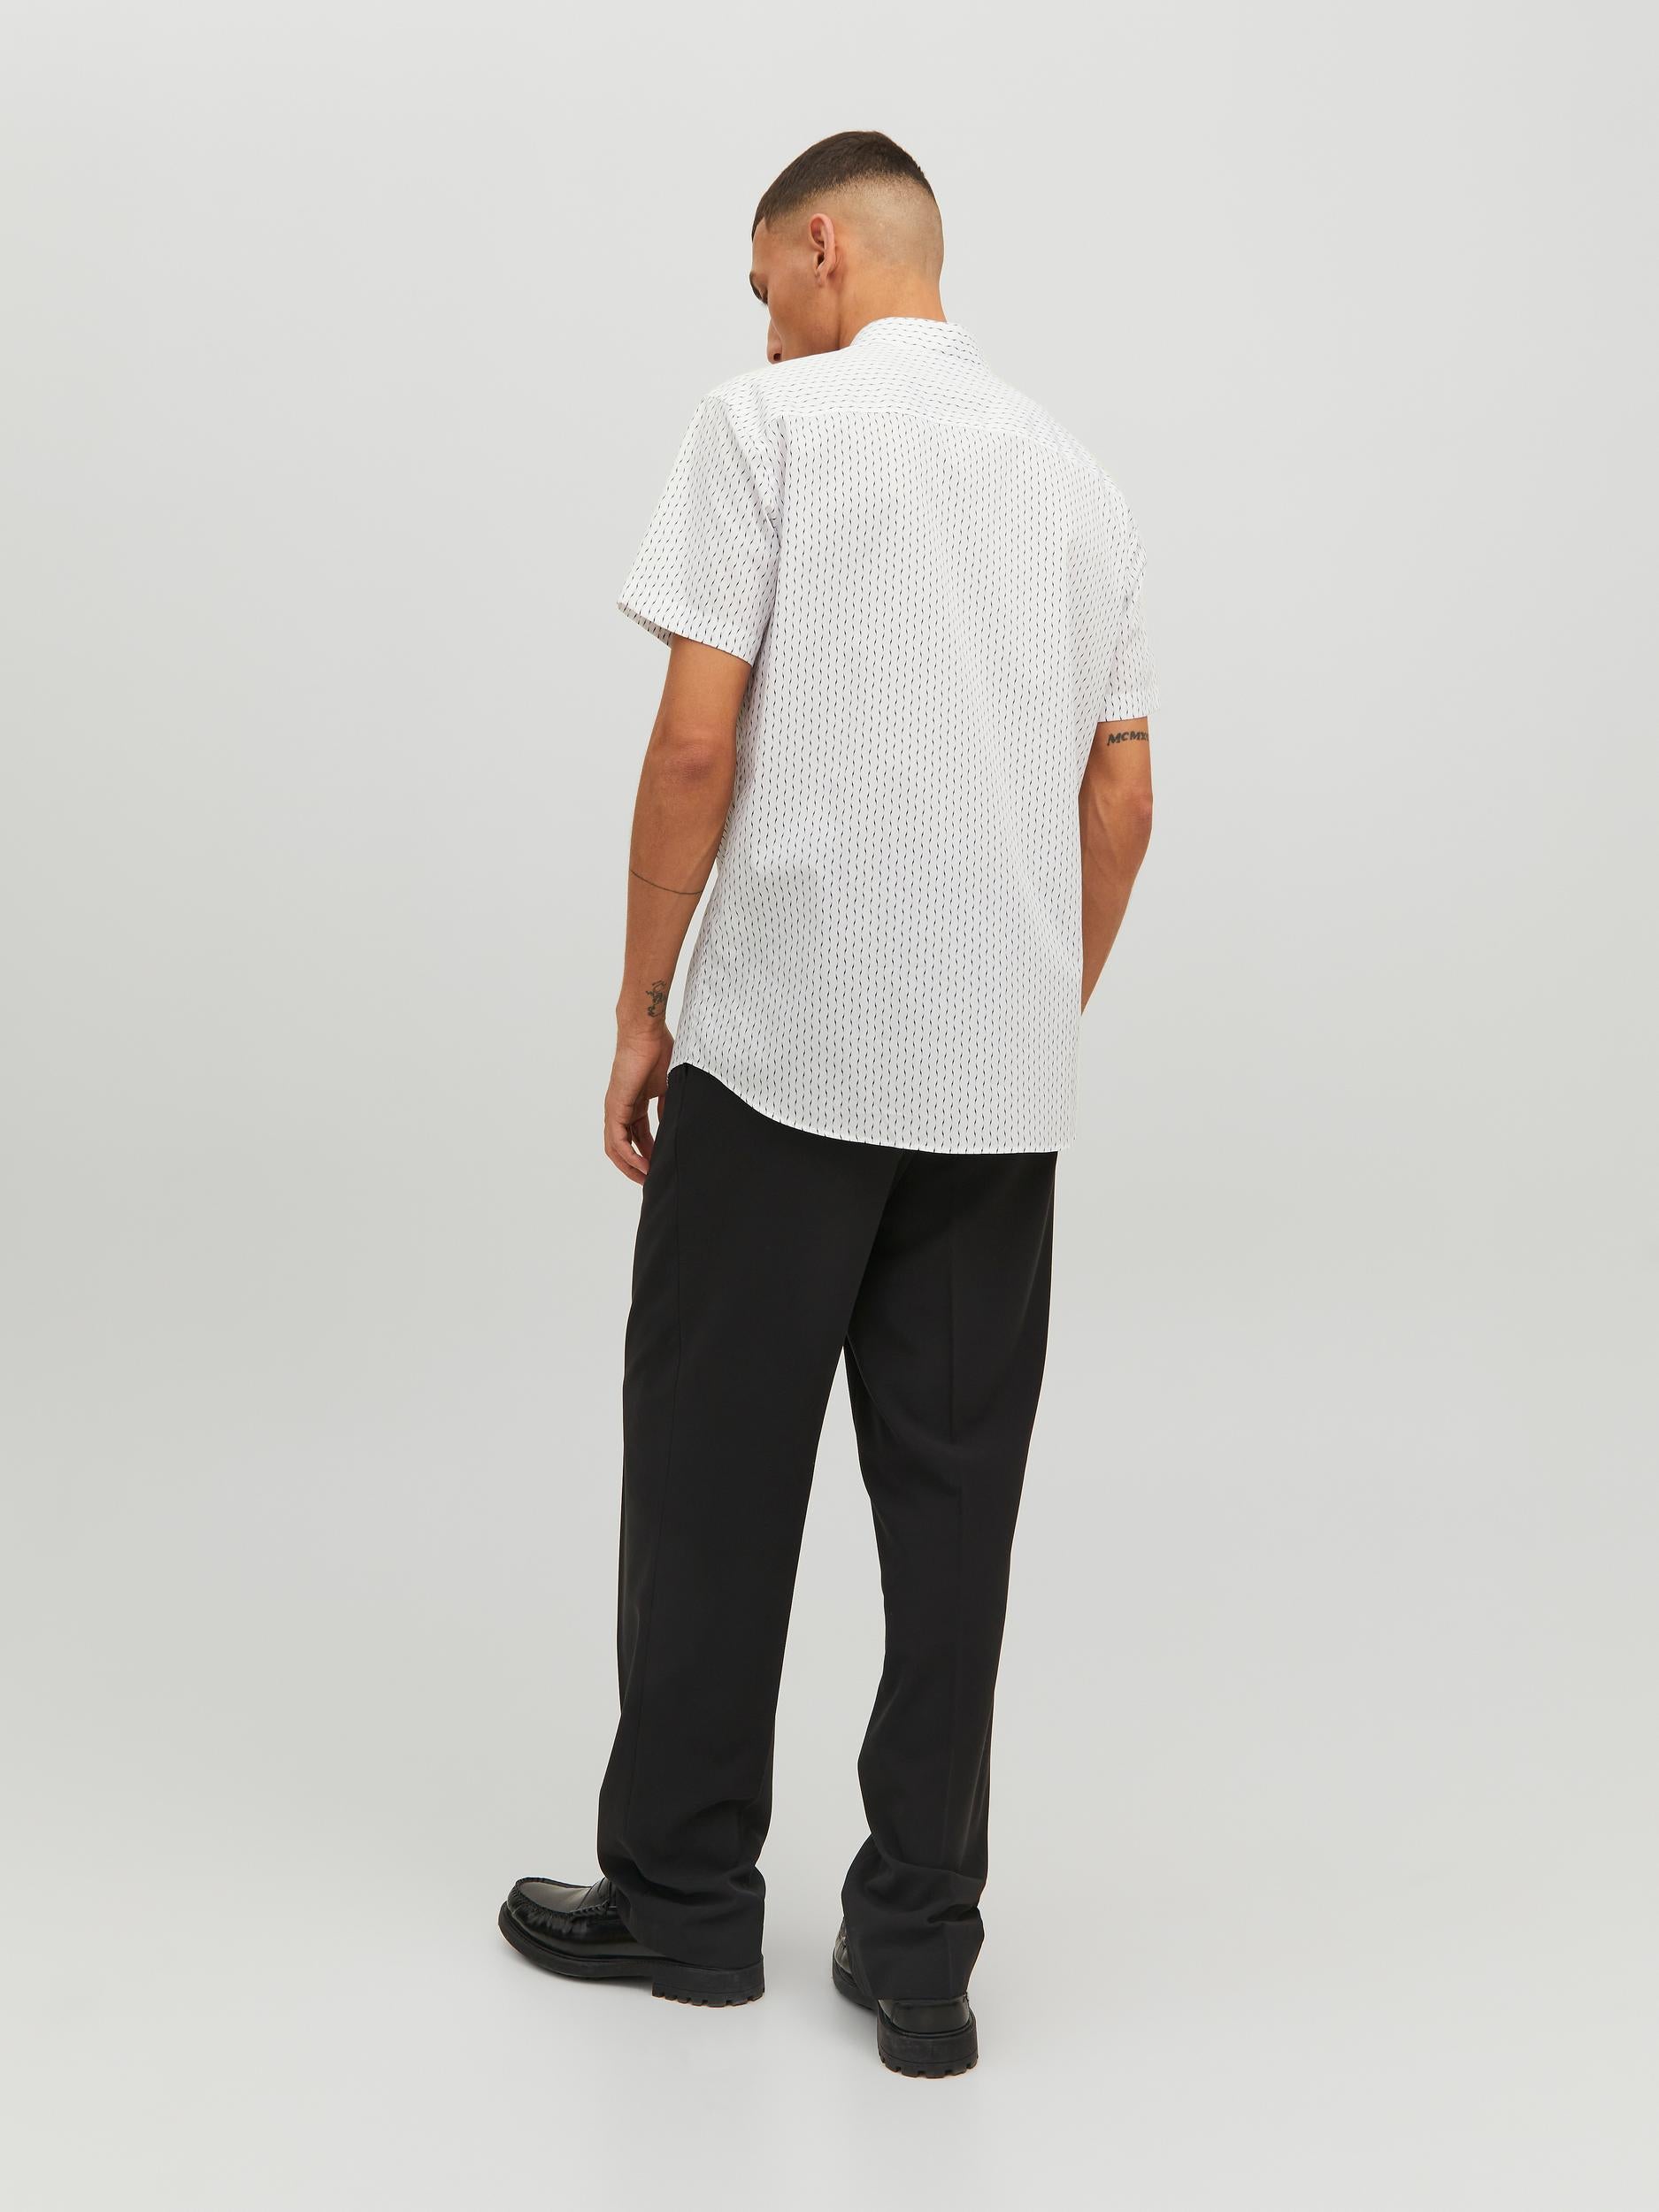 Men's Cardiff Print White Short Sleeve Shirt-Full Model Back View